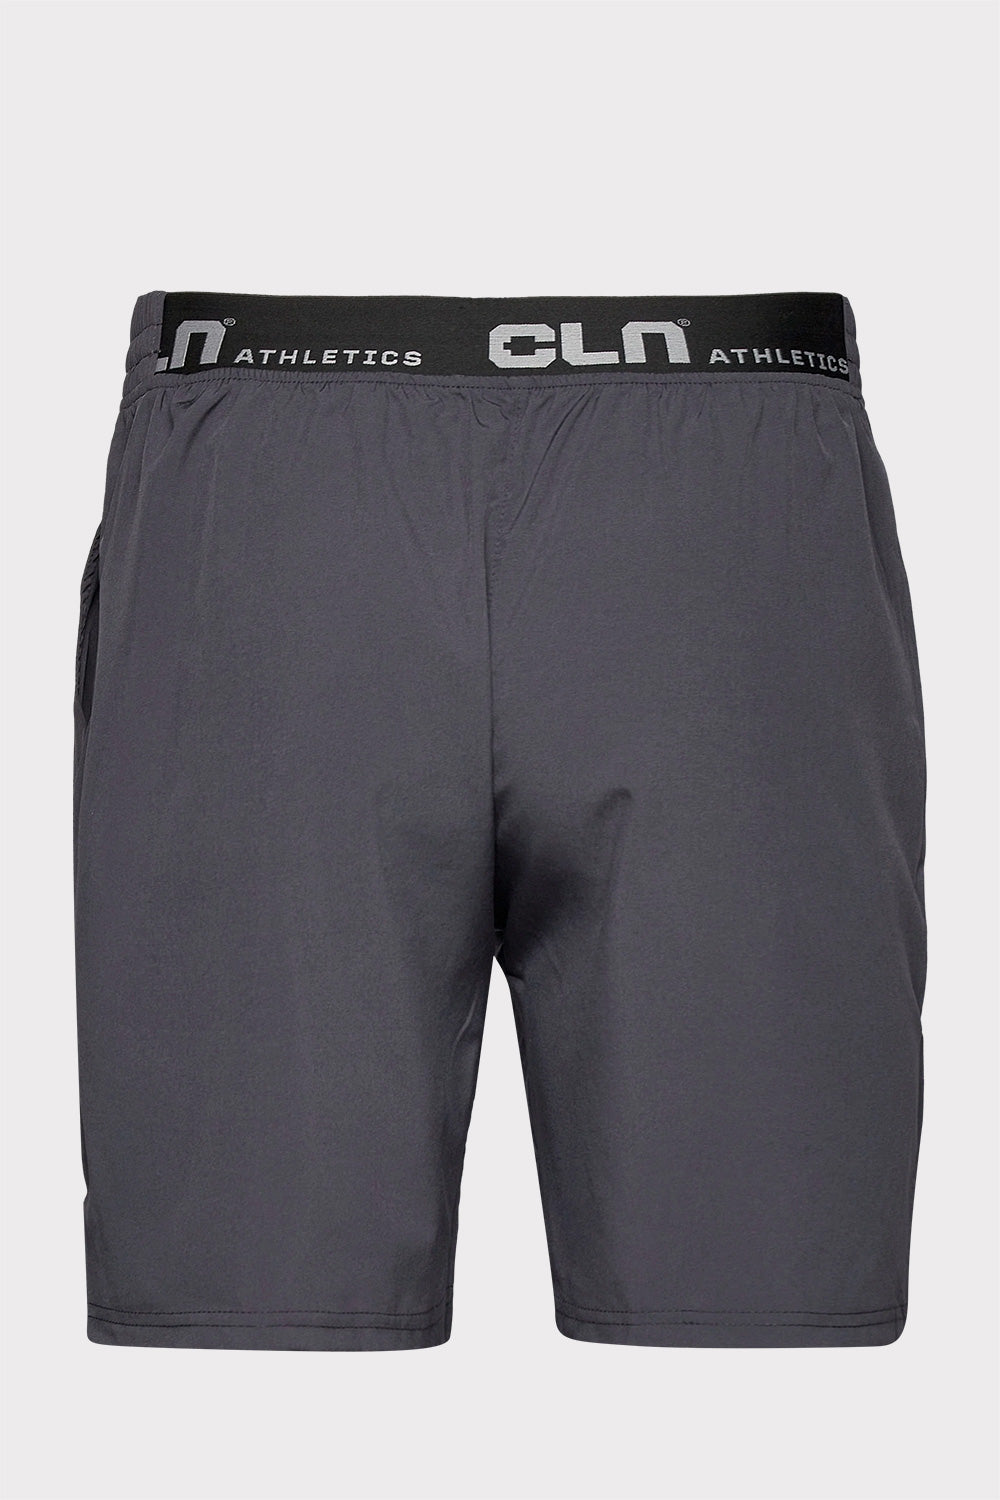 CLN Transform Shorts - Grafit